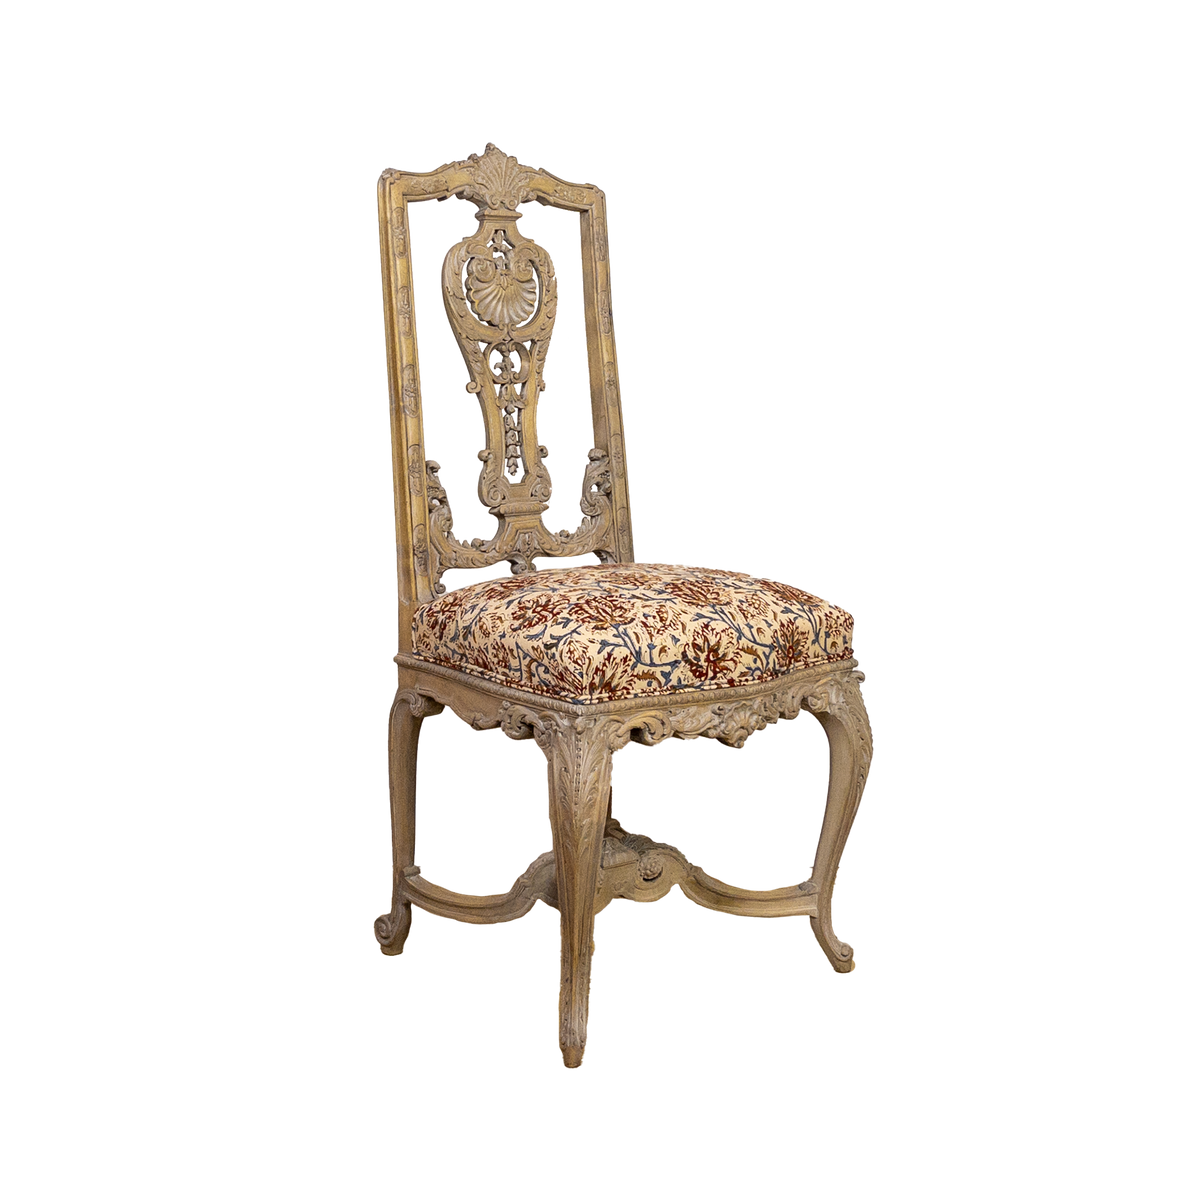 Litt Carved Chair Circa 1860